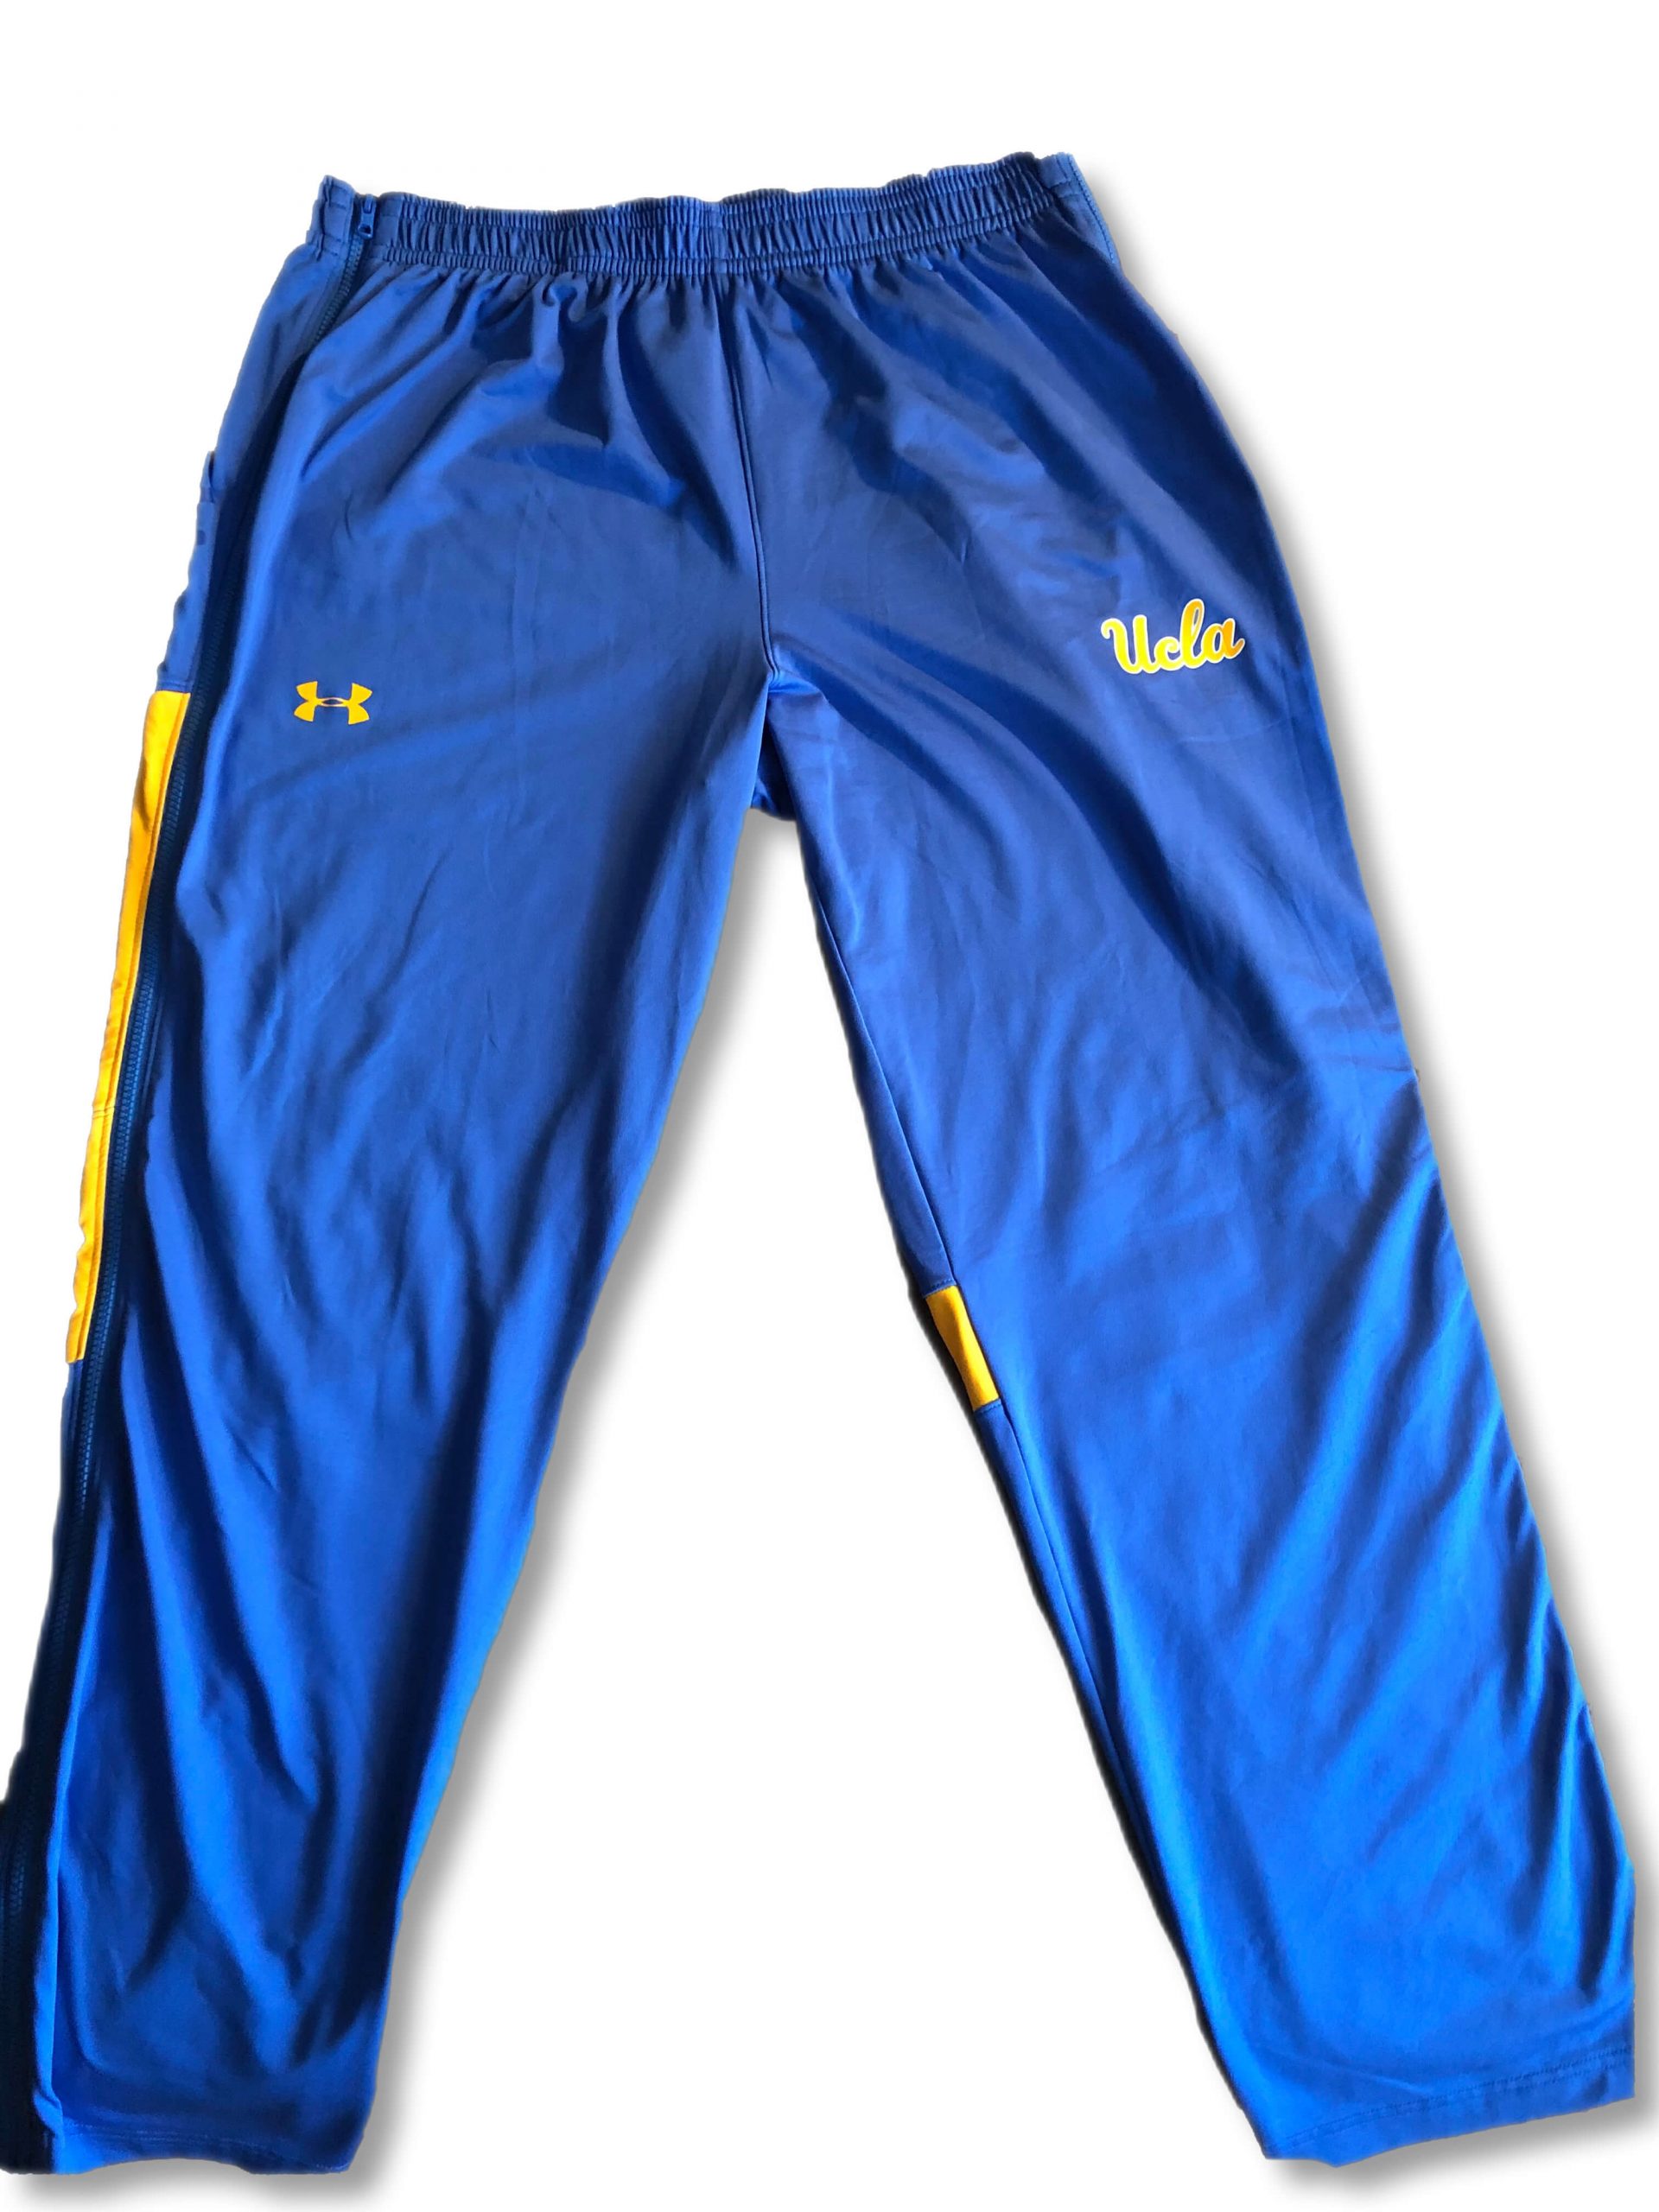 UCLA Basketball Sweatpants : NARP Clothing